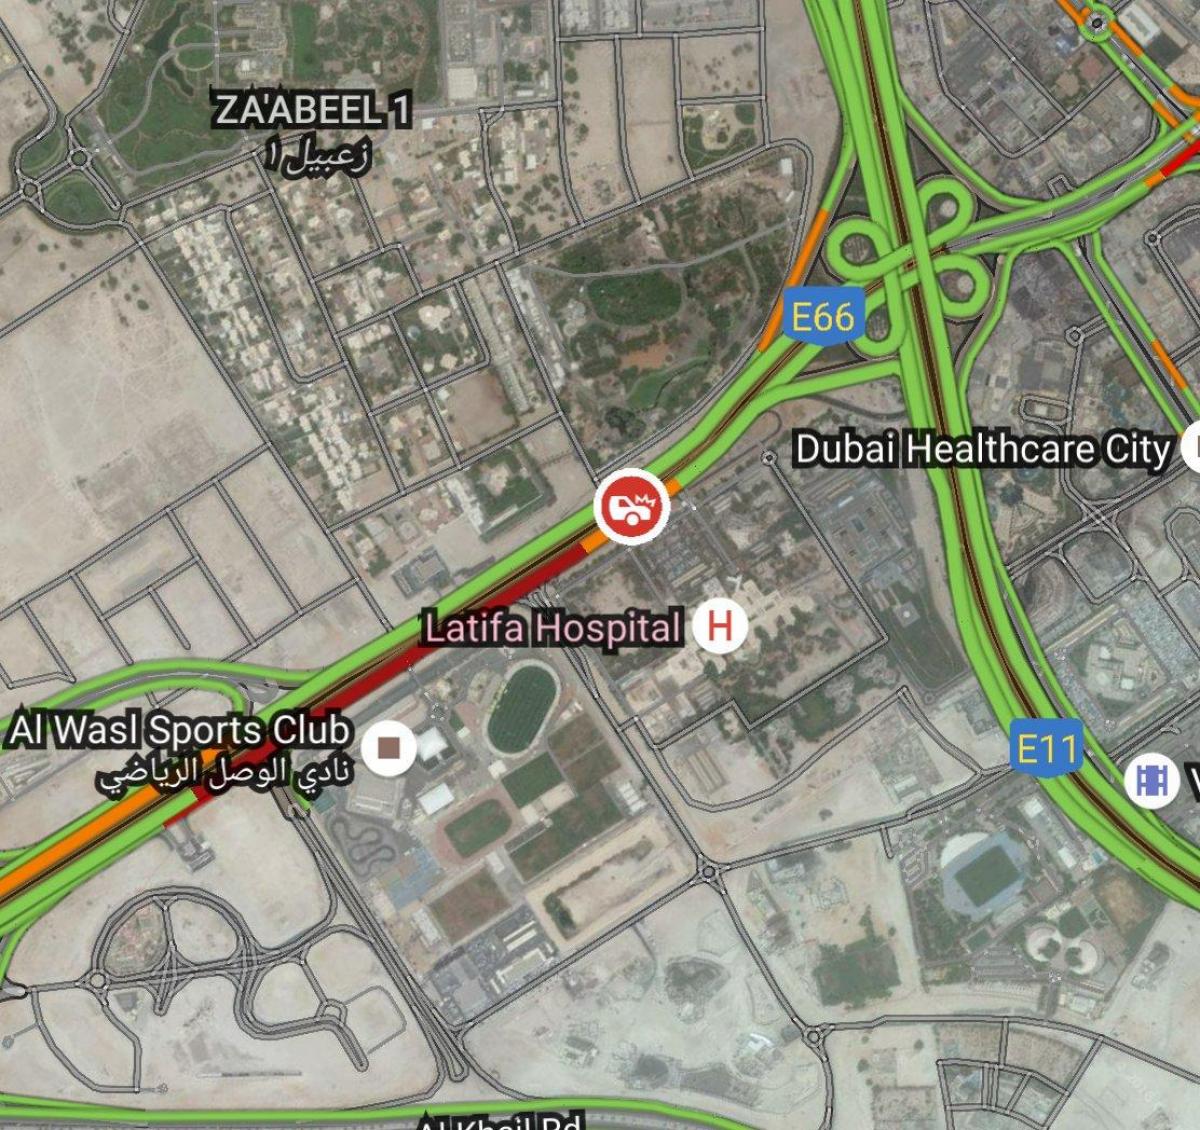 latifa hospital de Dubai mapa de localização